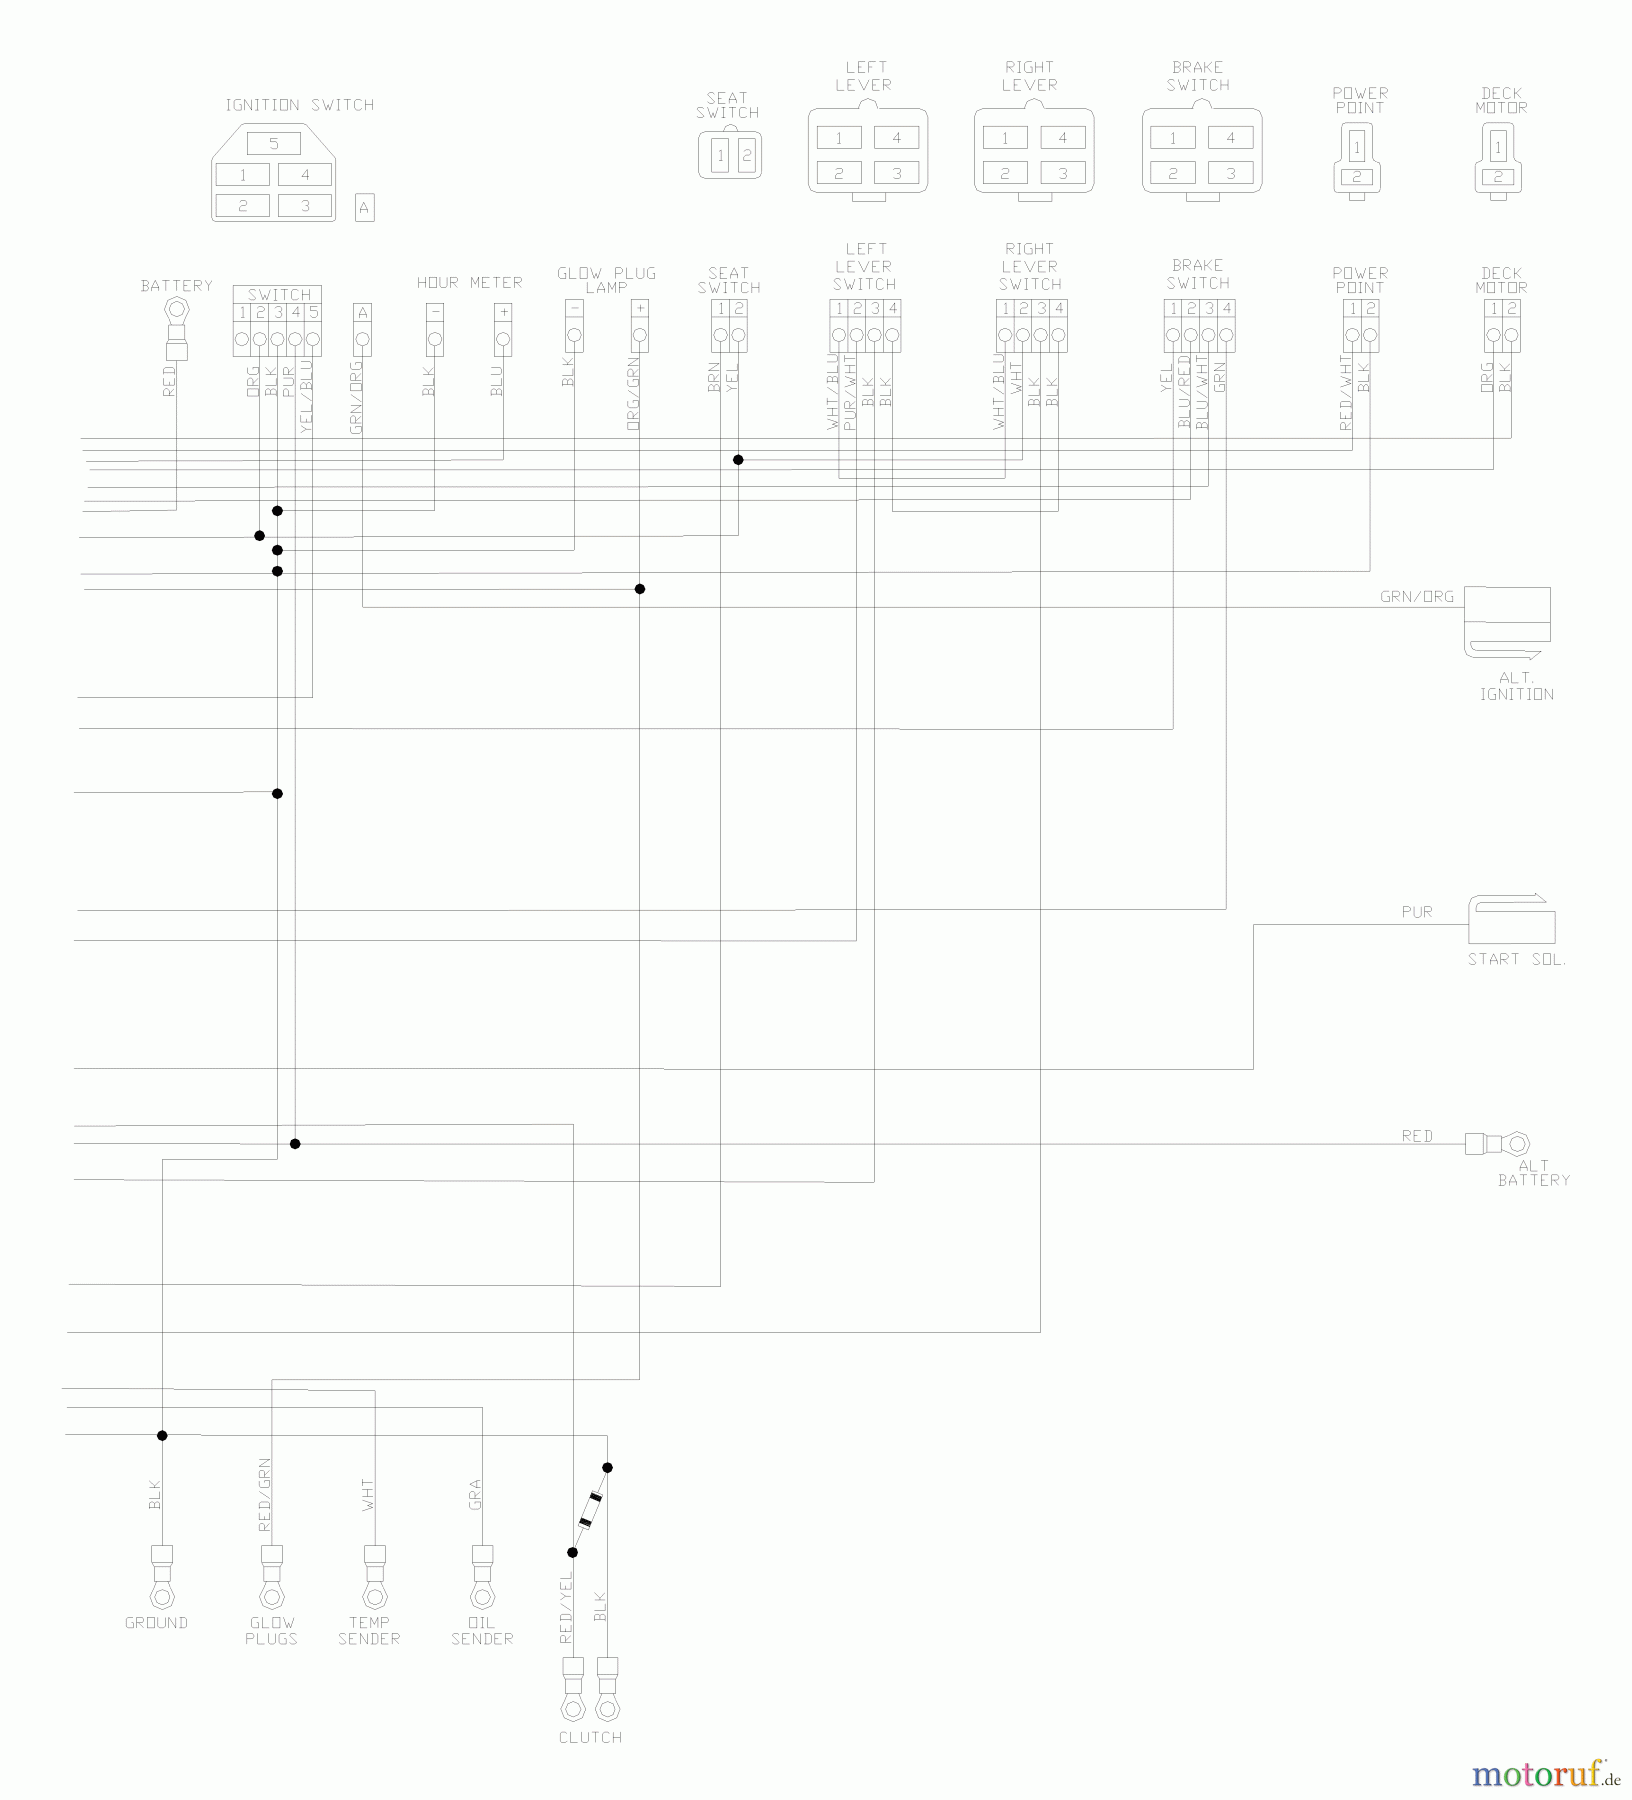  Husqvarna Nullwendekreismäher, Zero-Turn BZ 6127 D (968999218) - Husqvarna Zero-Turn Mower (2004-11 & After) (SN: 033600000 & Up) Wiring Schematic (Part 2)